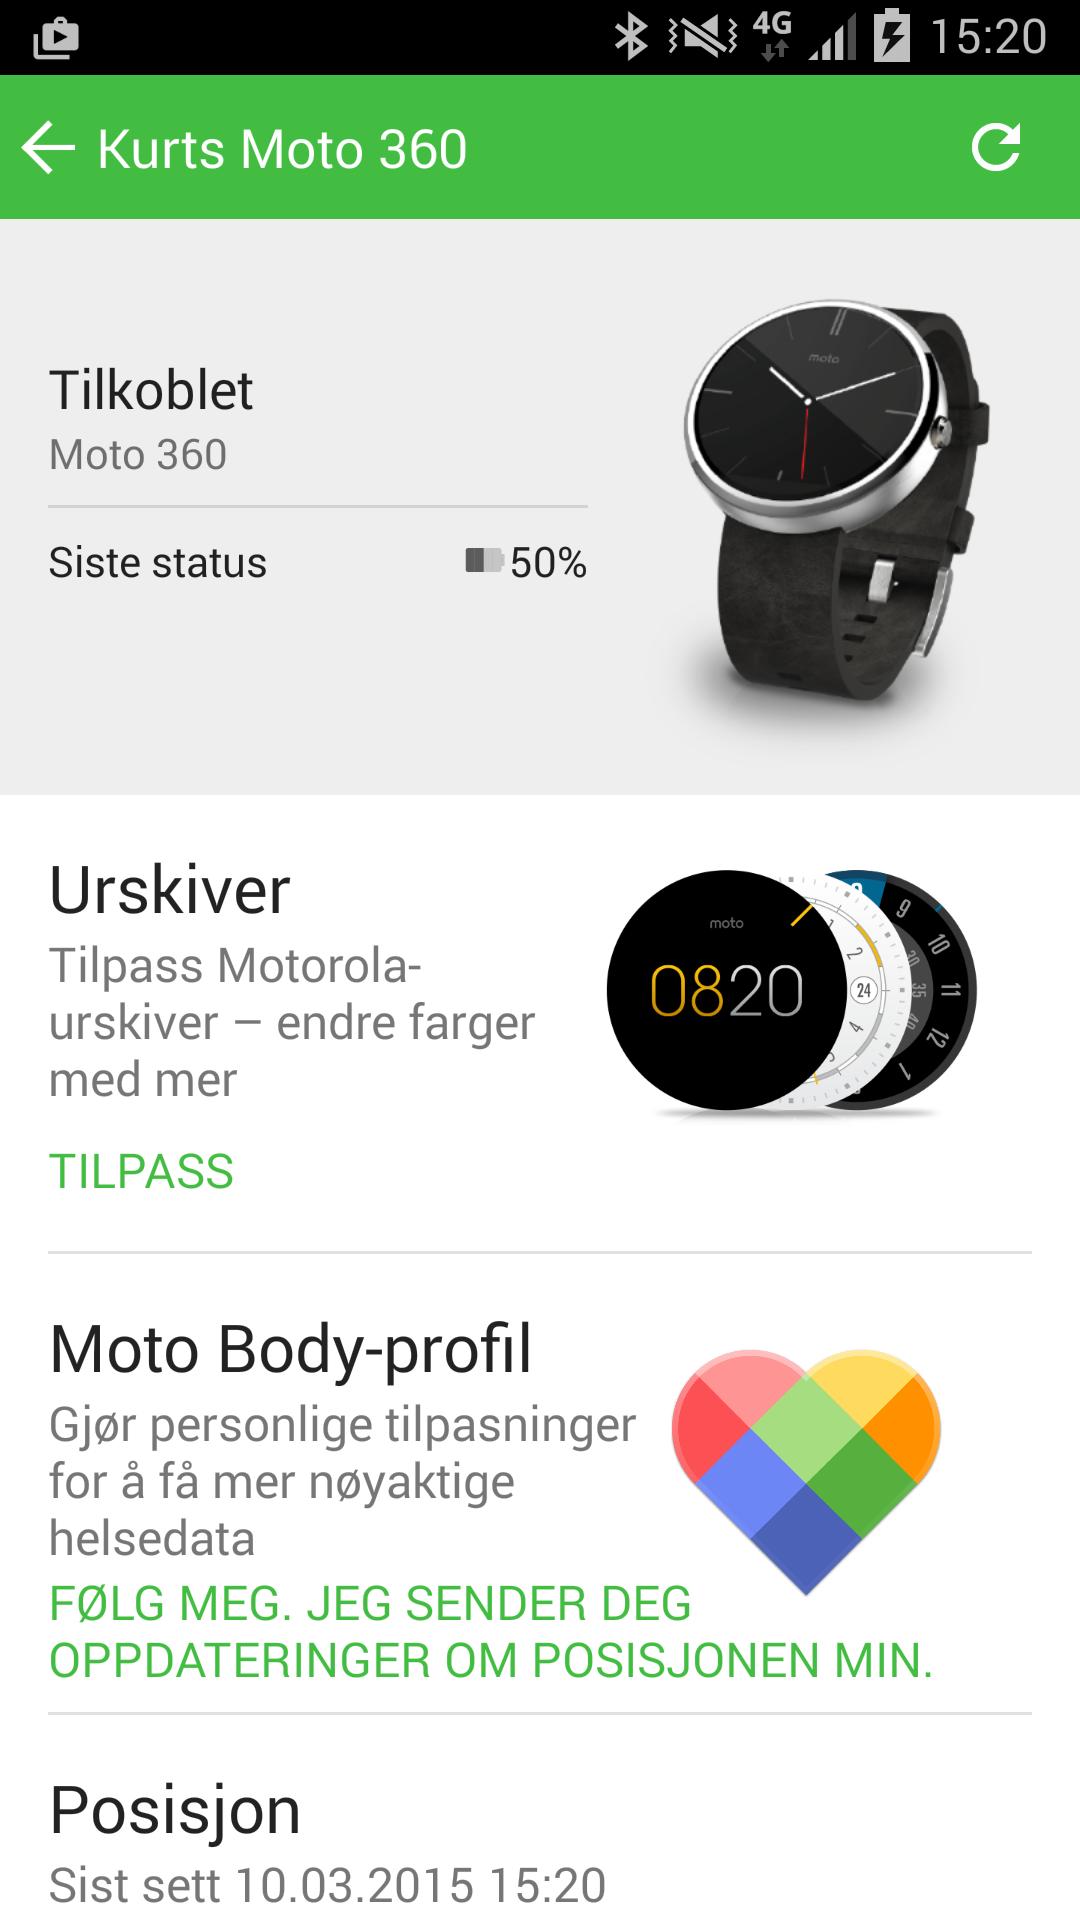 Via Motorola Connect-appen kan du sette opp Moto 360-klokken, og se hvor klokken befinner seg.